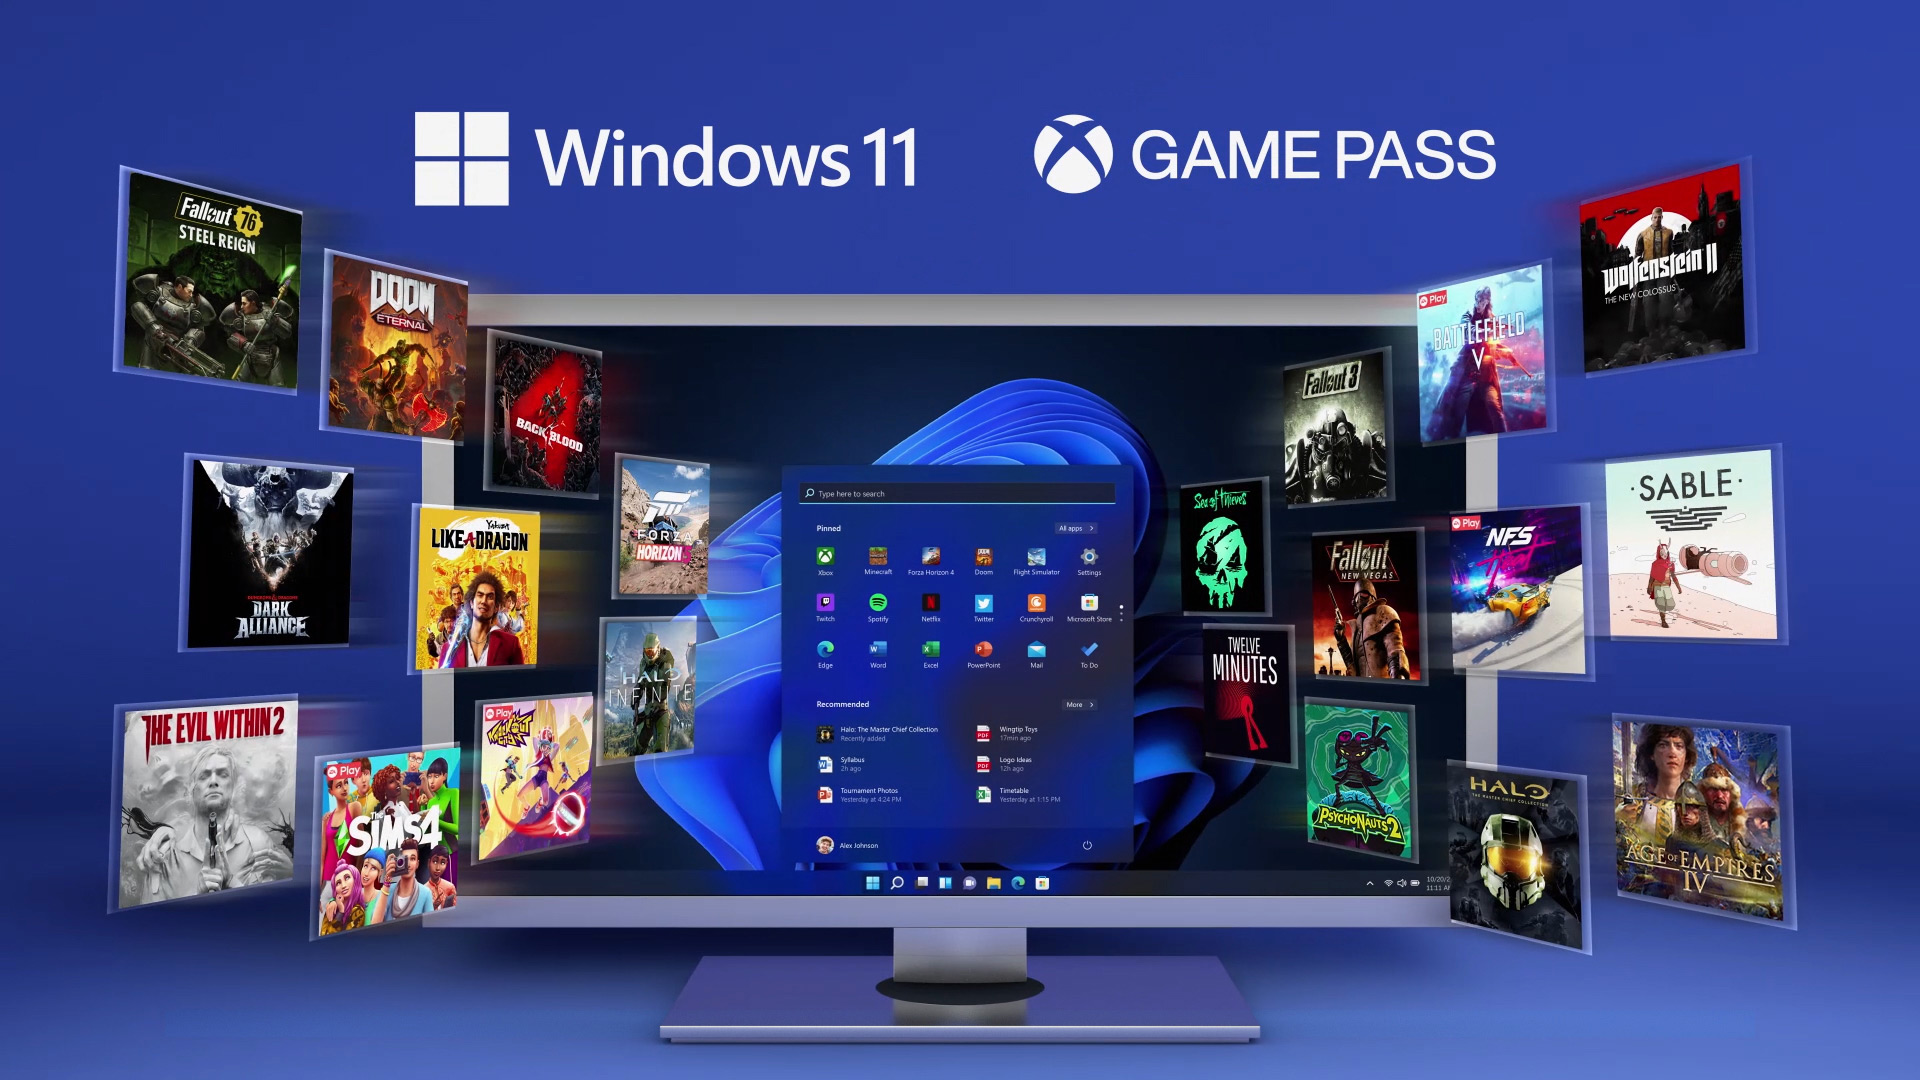 Windows 11 블룸 화면 및 고정된 앱 창과 많은 게임들이 이를 둘러싸고 있는 모니터